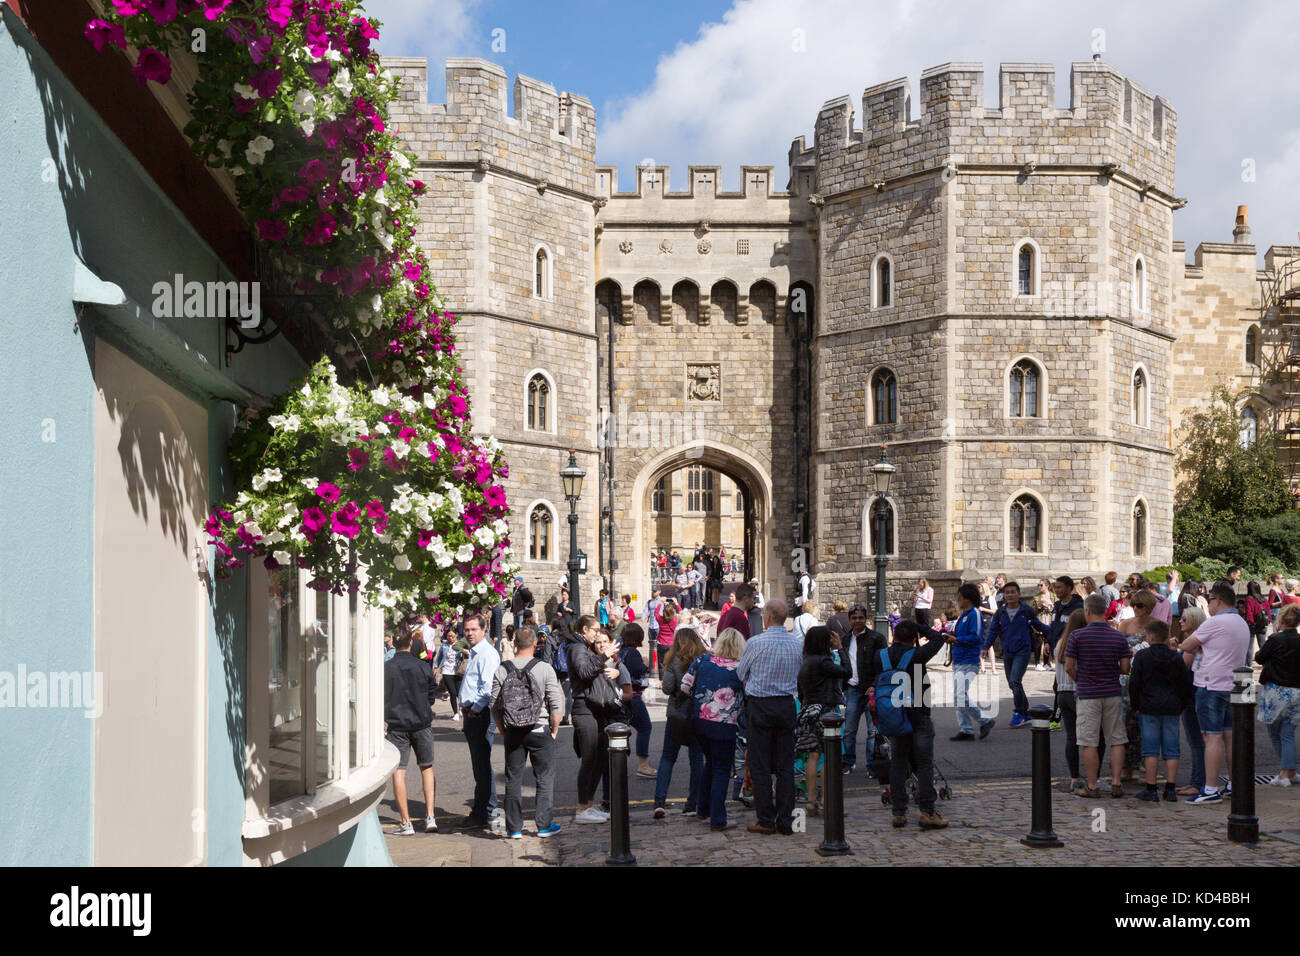 Vista exterior del castillo de Windsor, Windsor, Berkshire Inglaterra Foto de stock